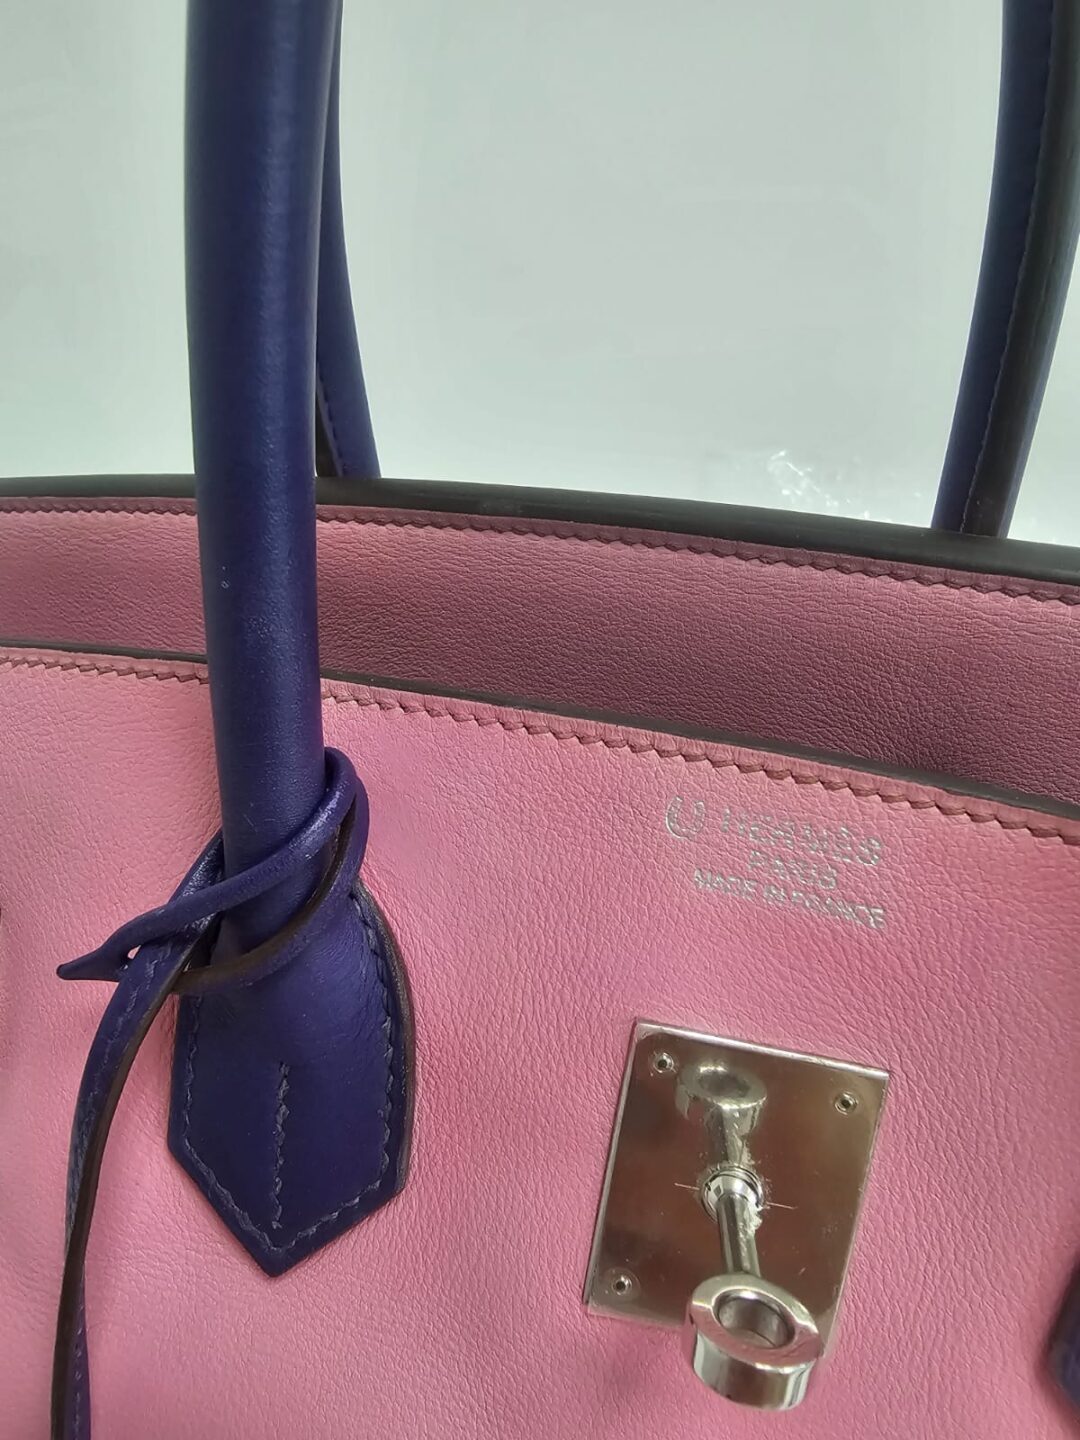 Hermès Birkin 35 Bubblegum 5P Pink Gold Hardware • Investment Bag